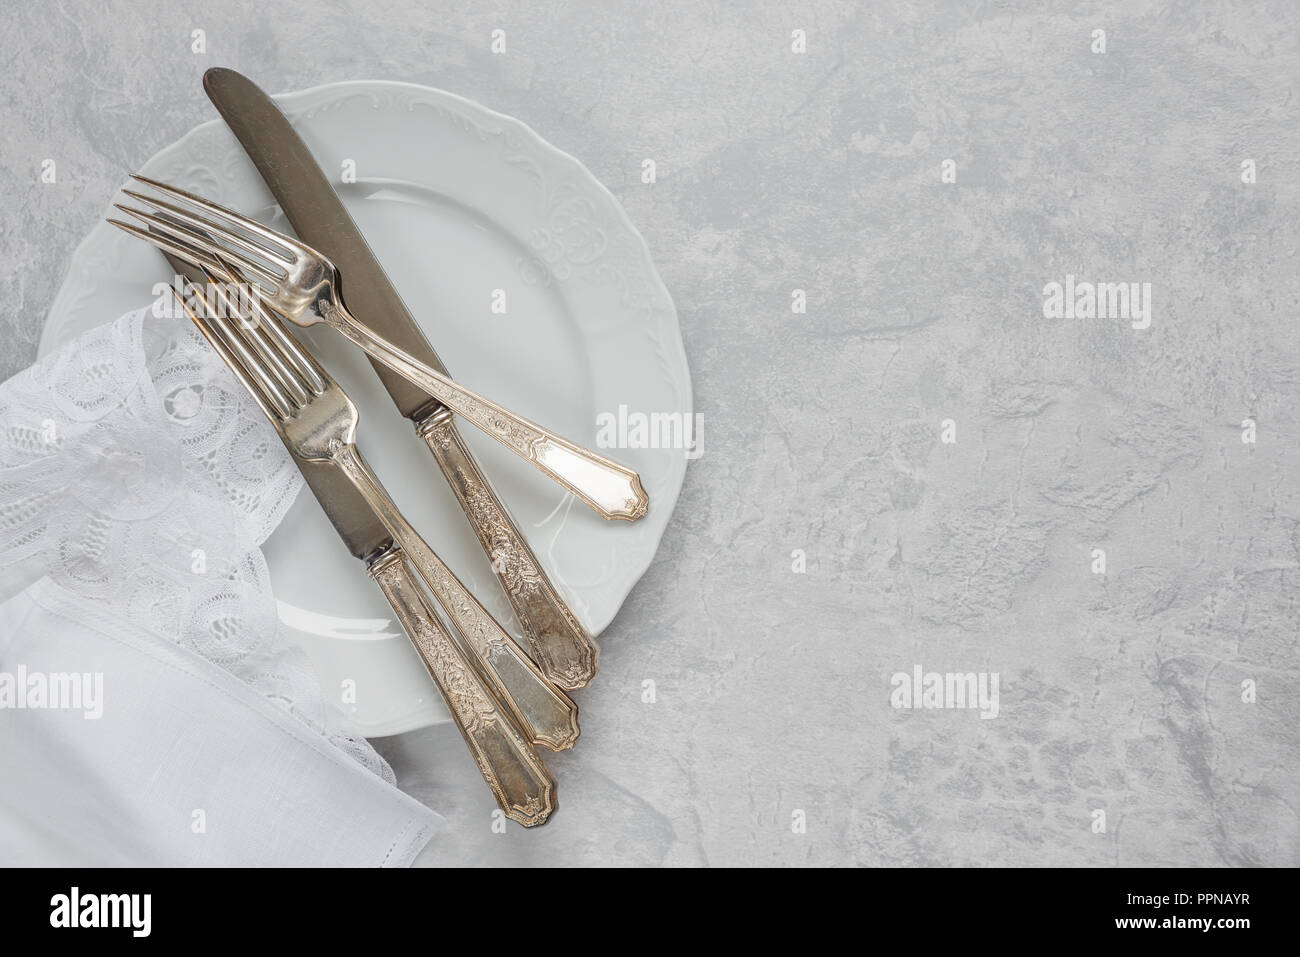 Silber Besteck auf einem Porzellanteller und weiß Serviette mit belgischen Spitze sind auf dem Hintergrund von grauem Beton Oberfläche, mit copy-Raum Stockfoto